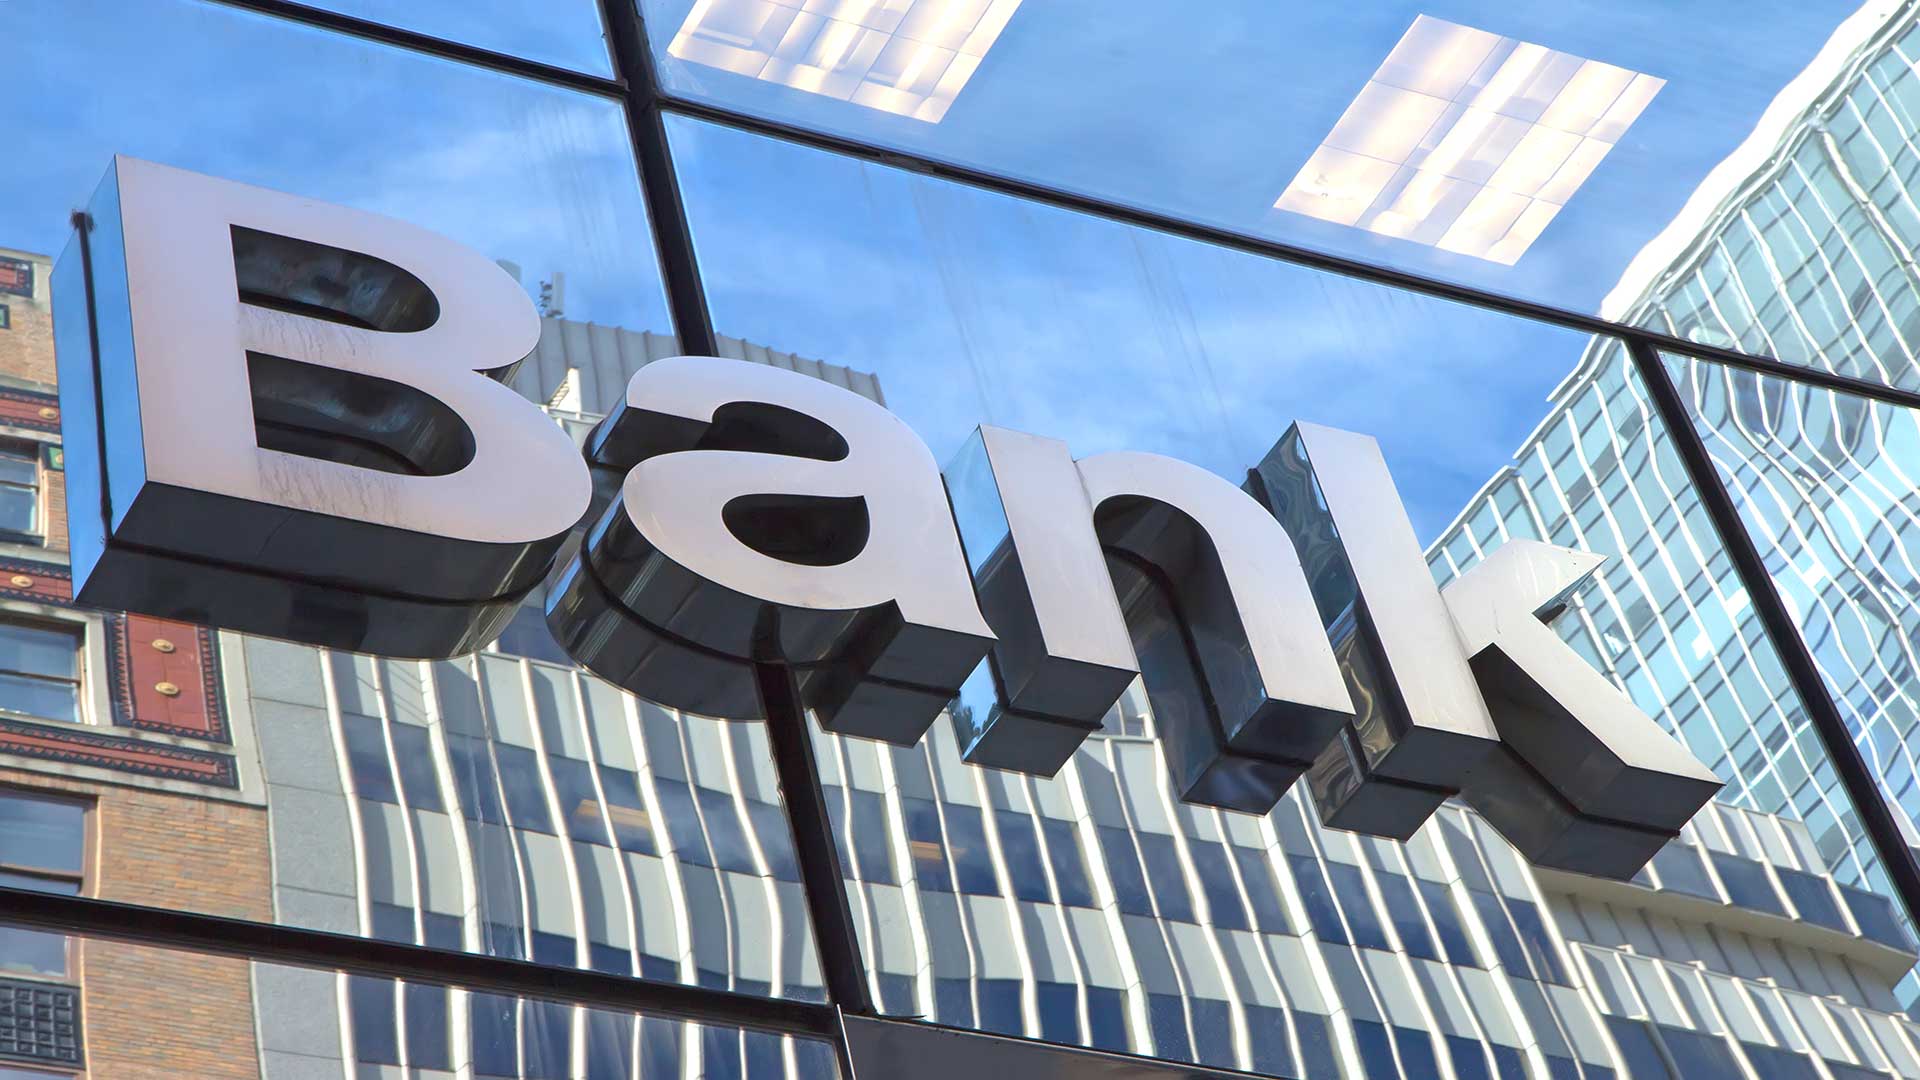 تثبیت حضور فعال بانک اسلامی دبی در بازارهای سرمایه جهانی